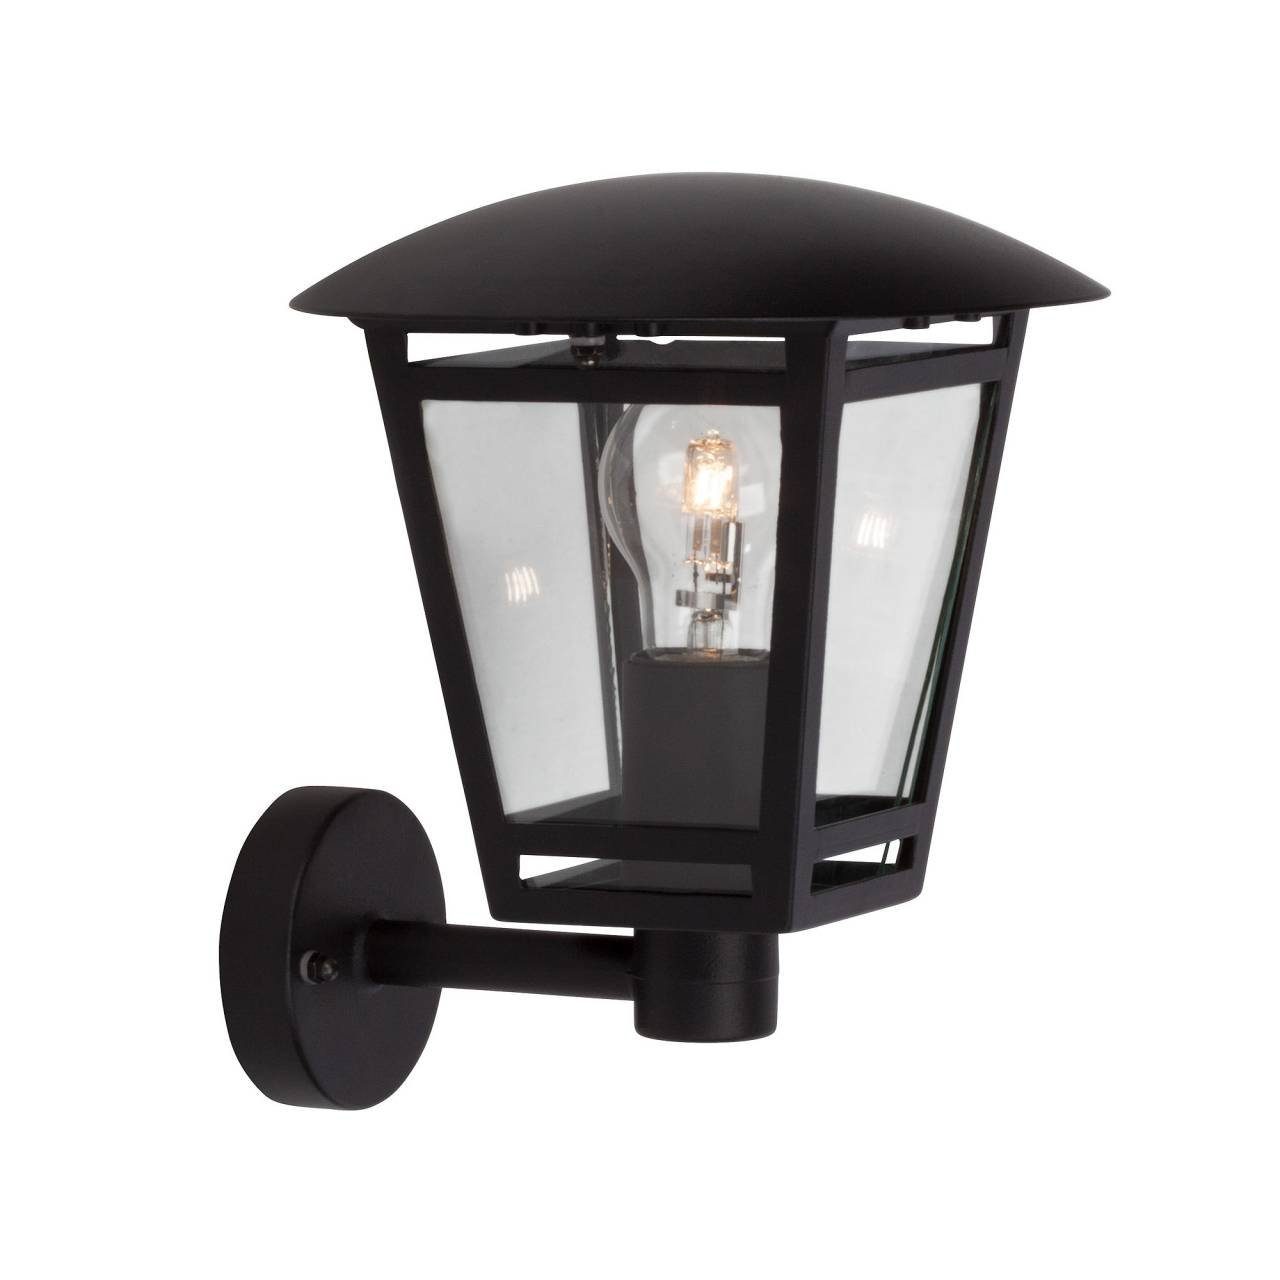 Brilliant LED Außen-Wandleuchte stehend Lampe schwarz Riley 40W, 1x E27, Außenwandleuchte Riley, A60, geeig